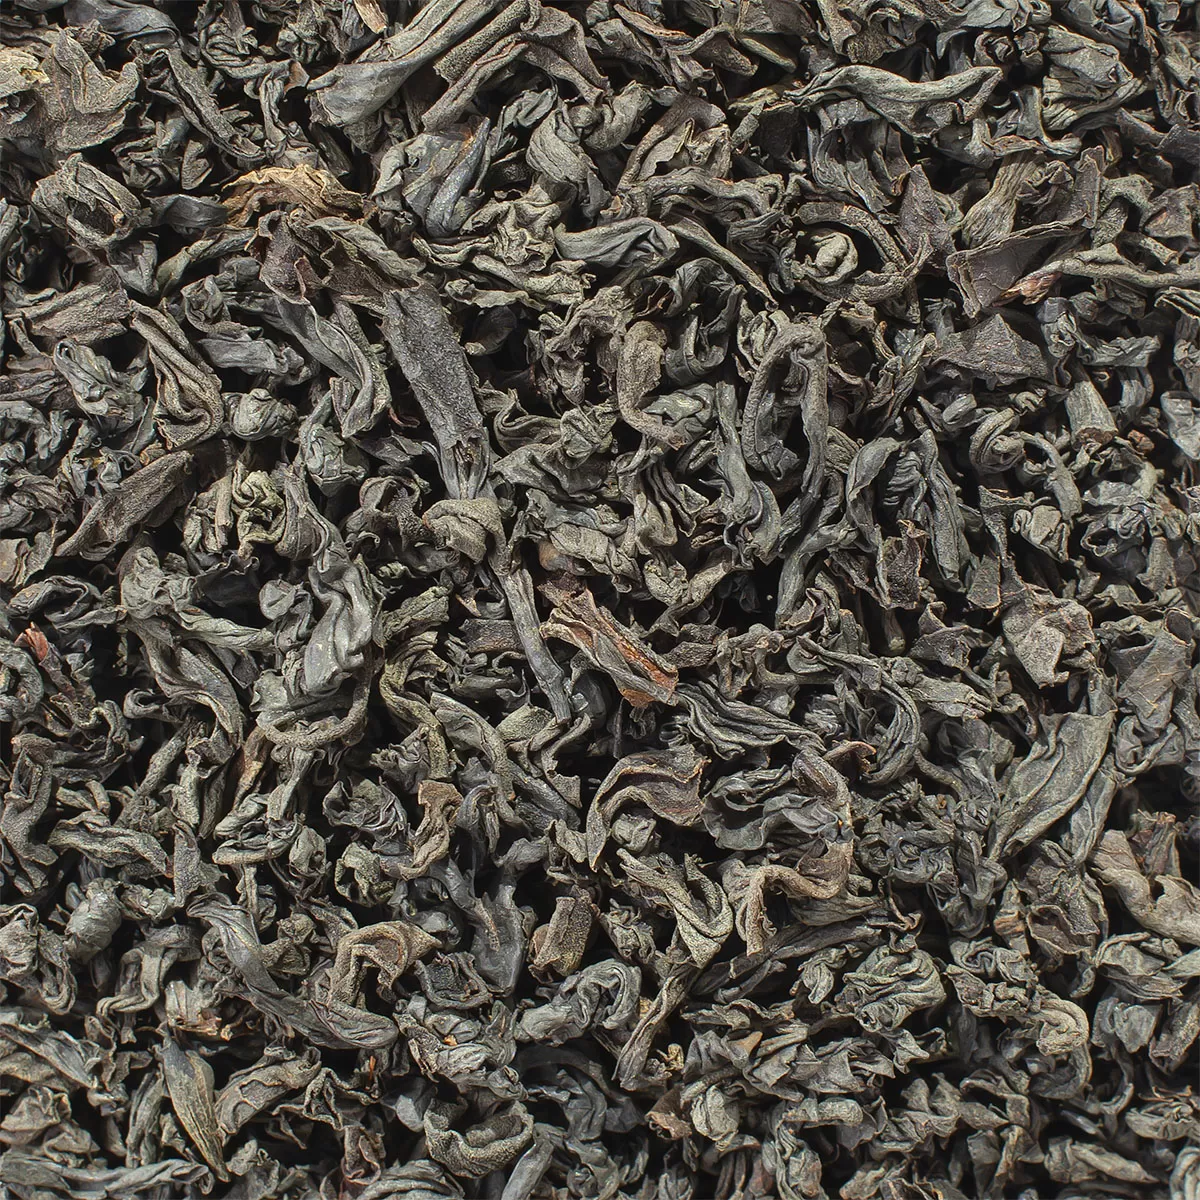 Чай черный Цейлон PEKOE-1